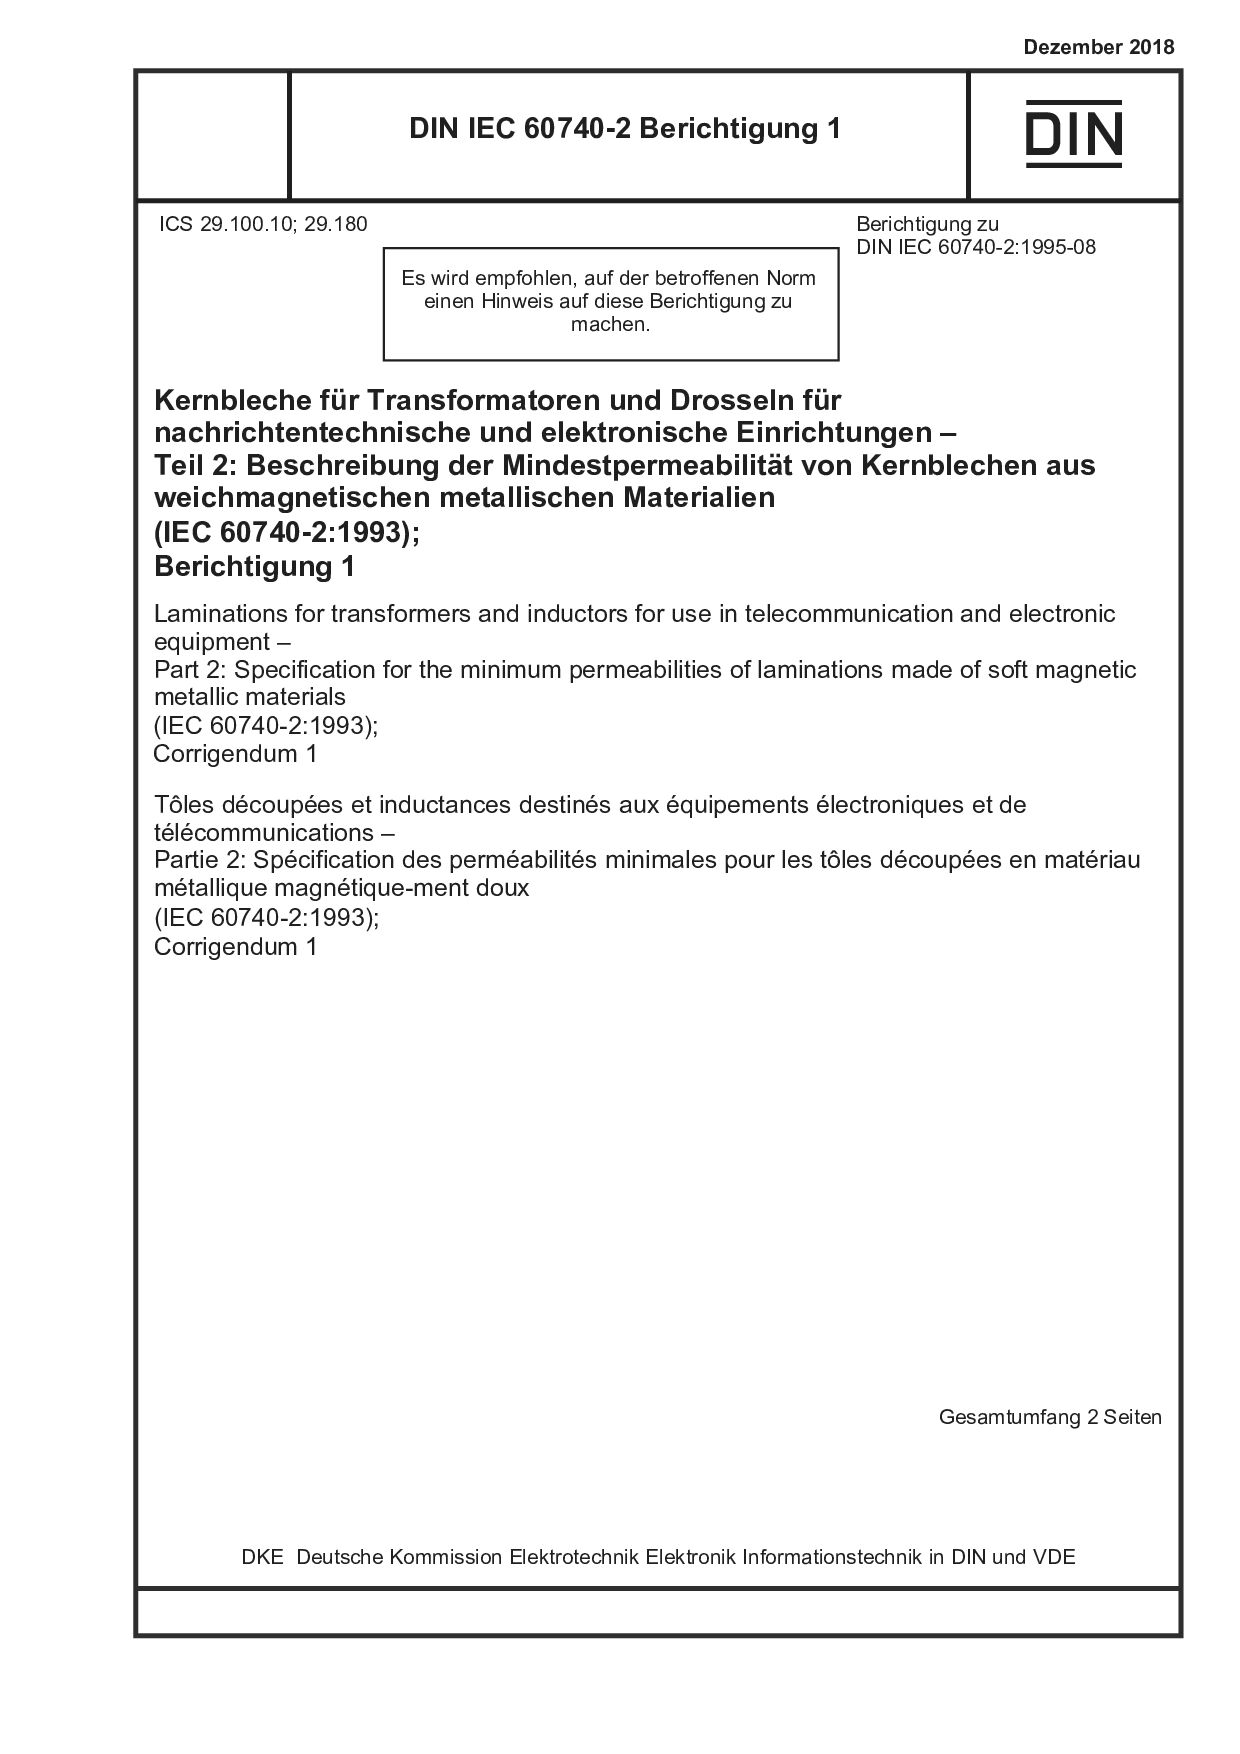 DIN IEC 60740-2 Berichtigung 1:2018-12